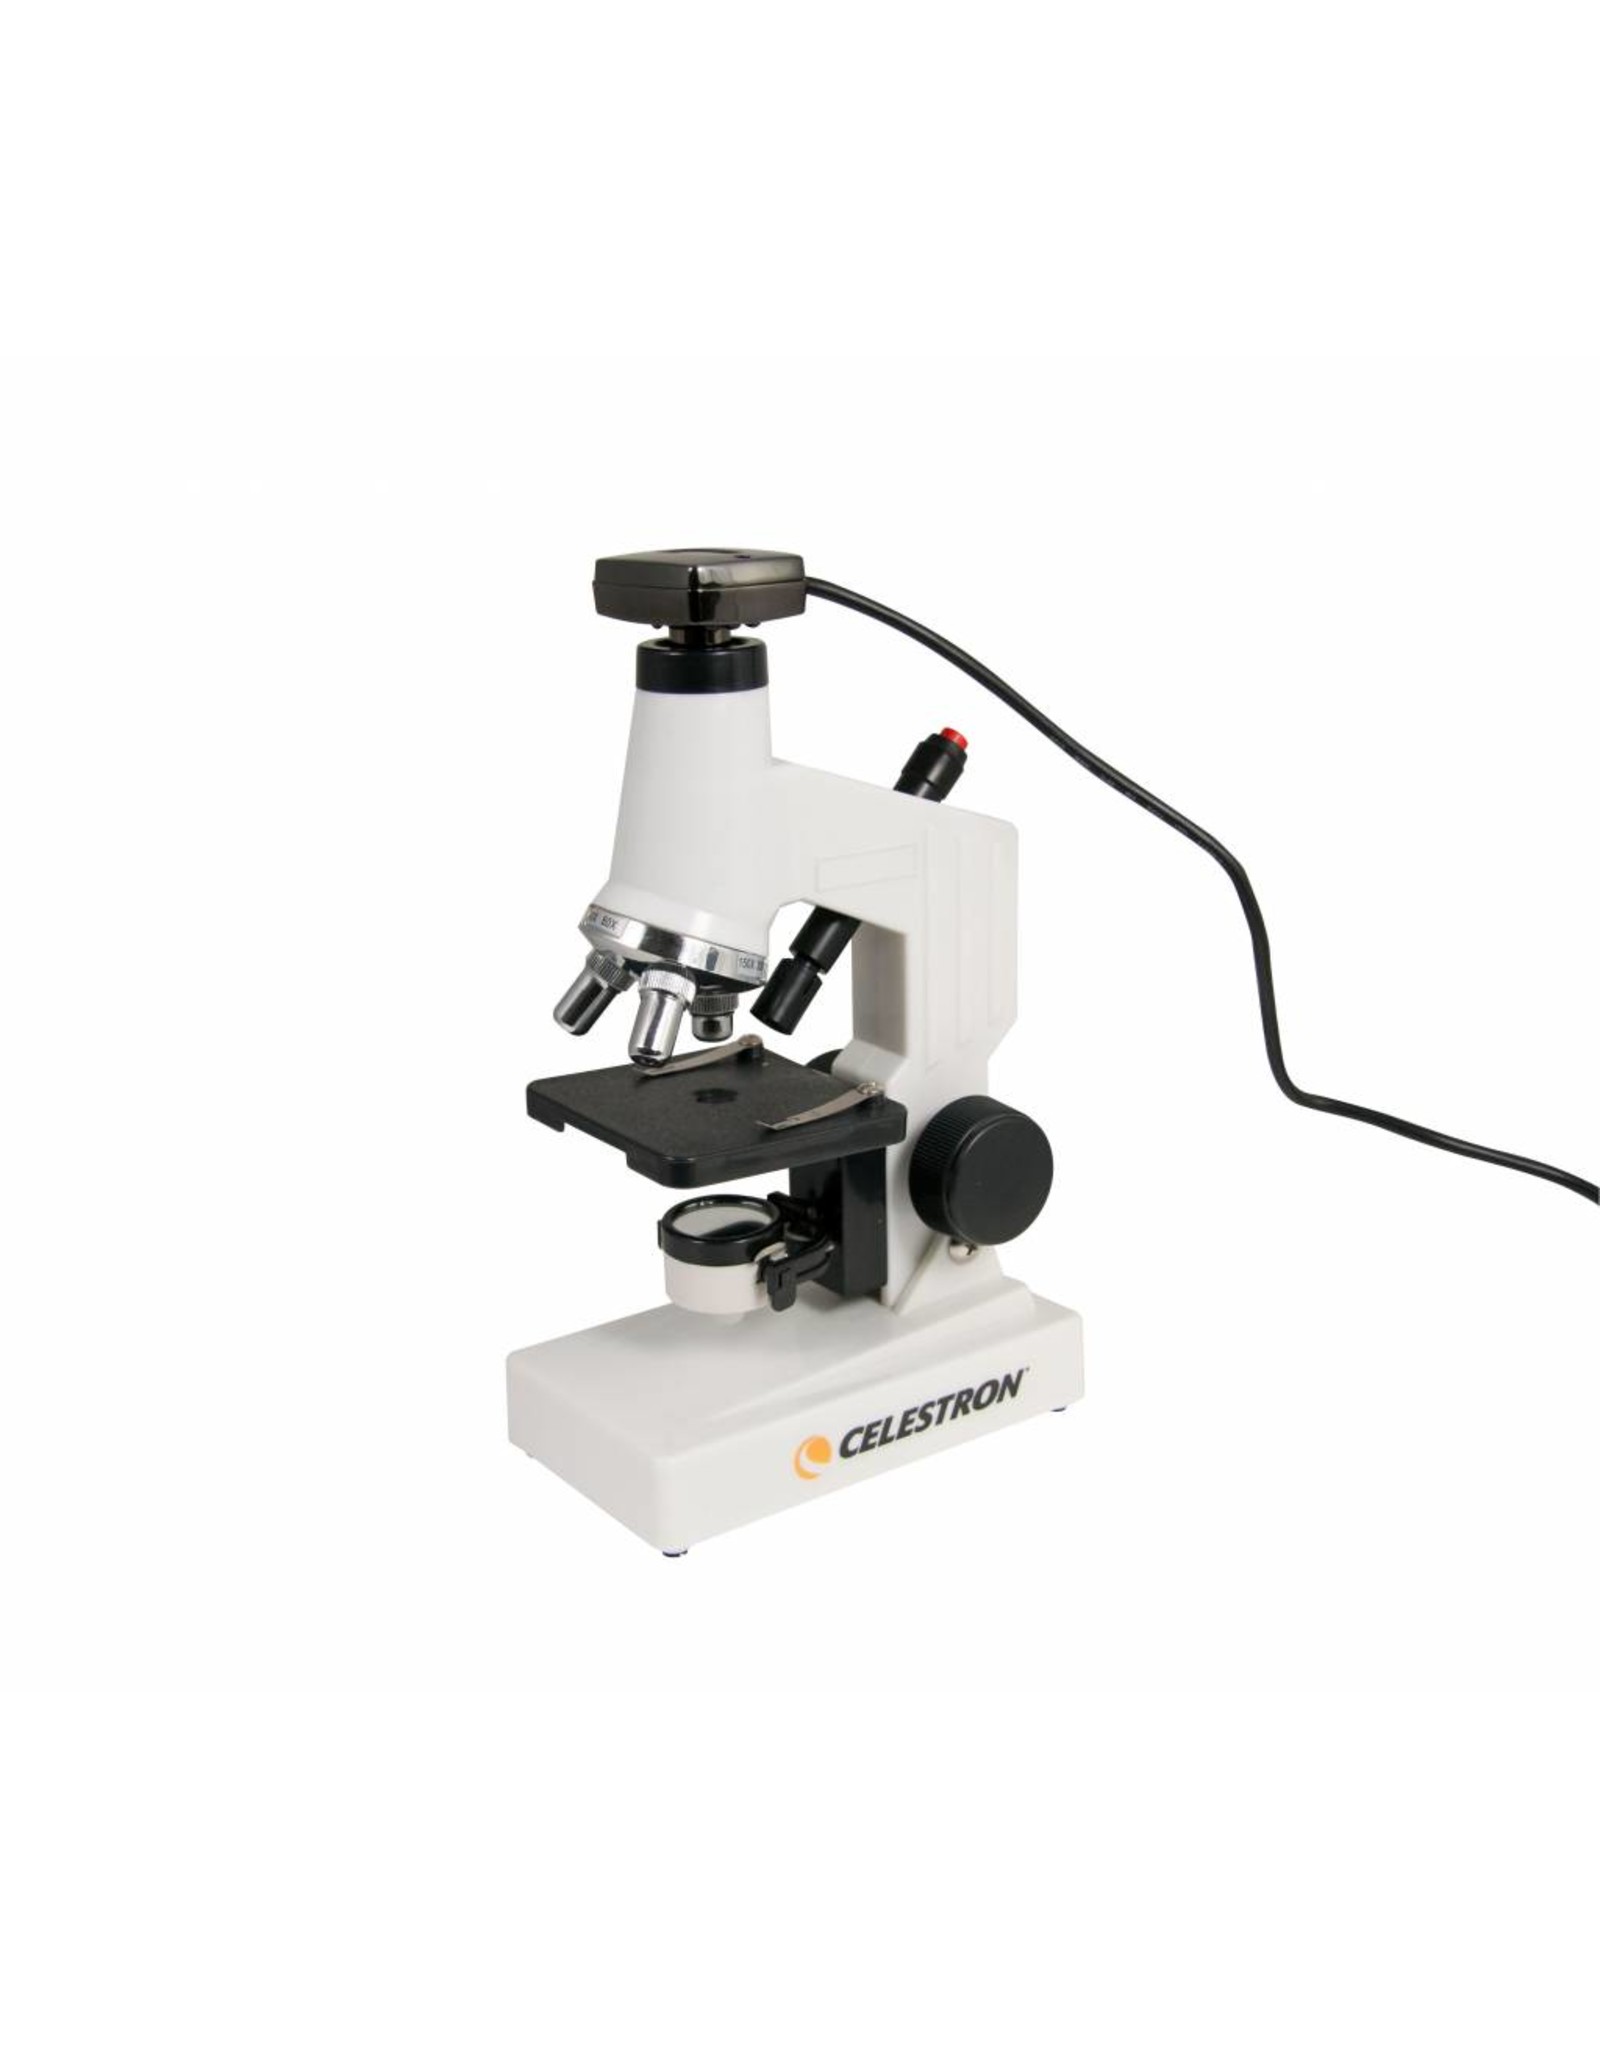 celestron digital microscope pro windows 10